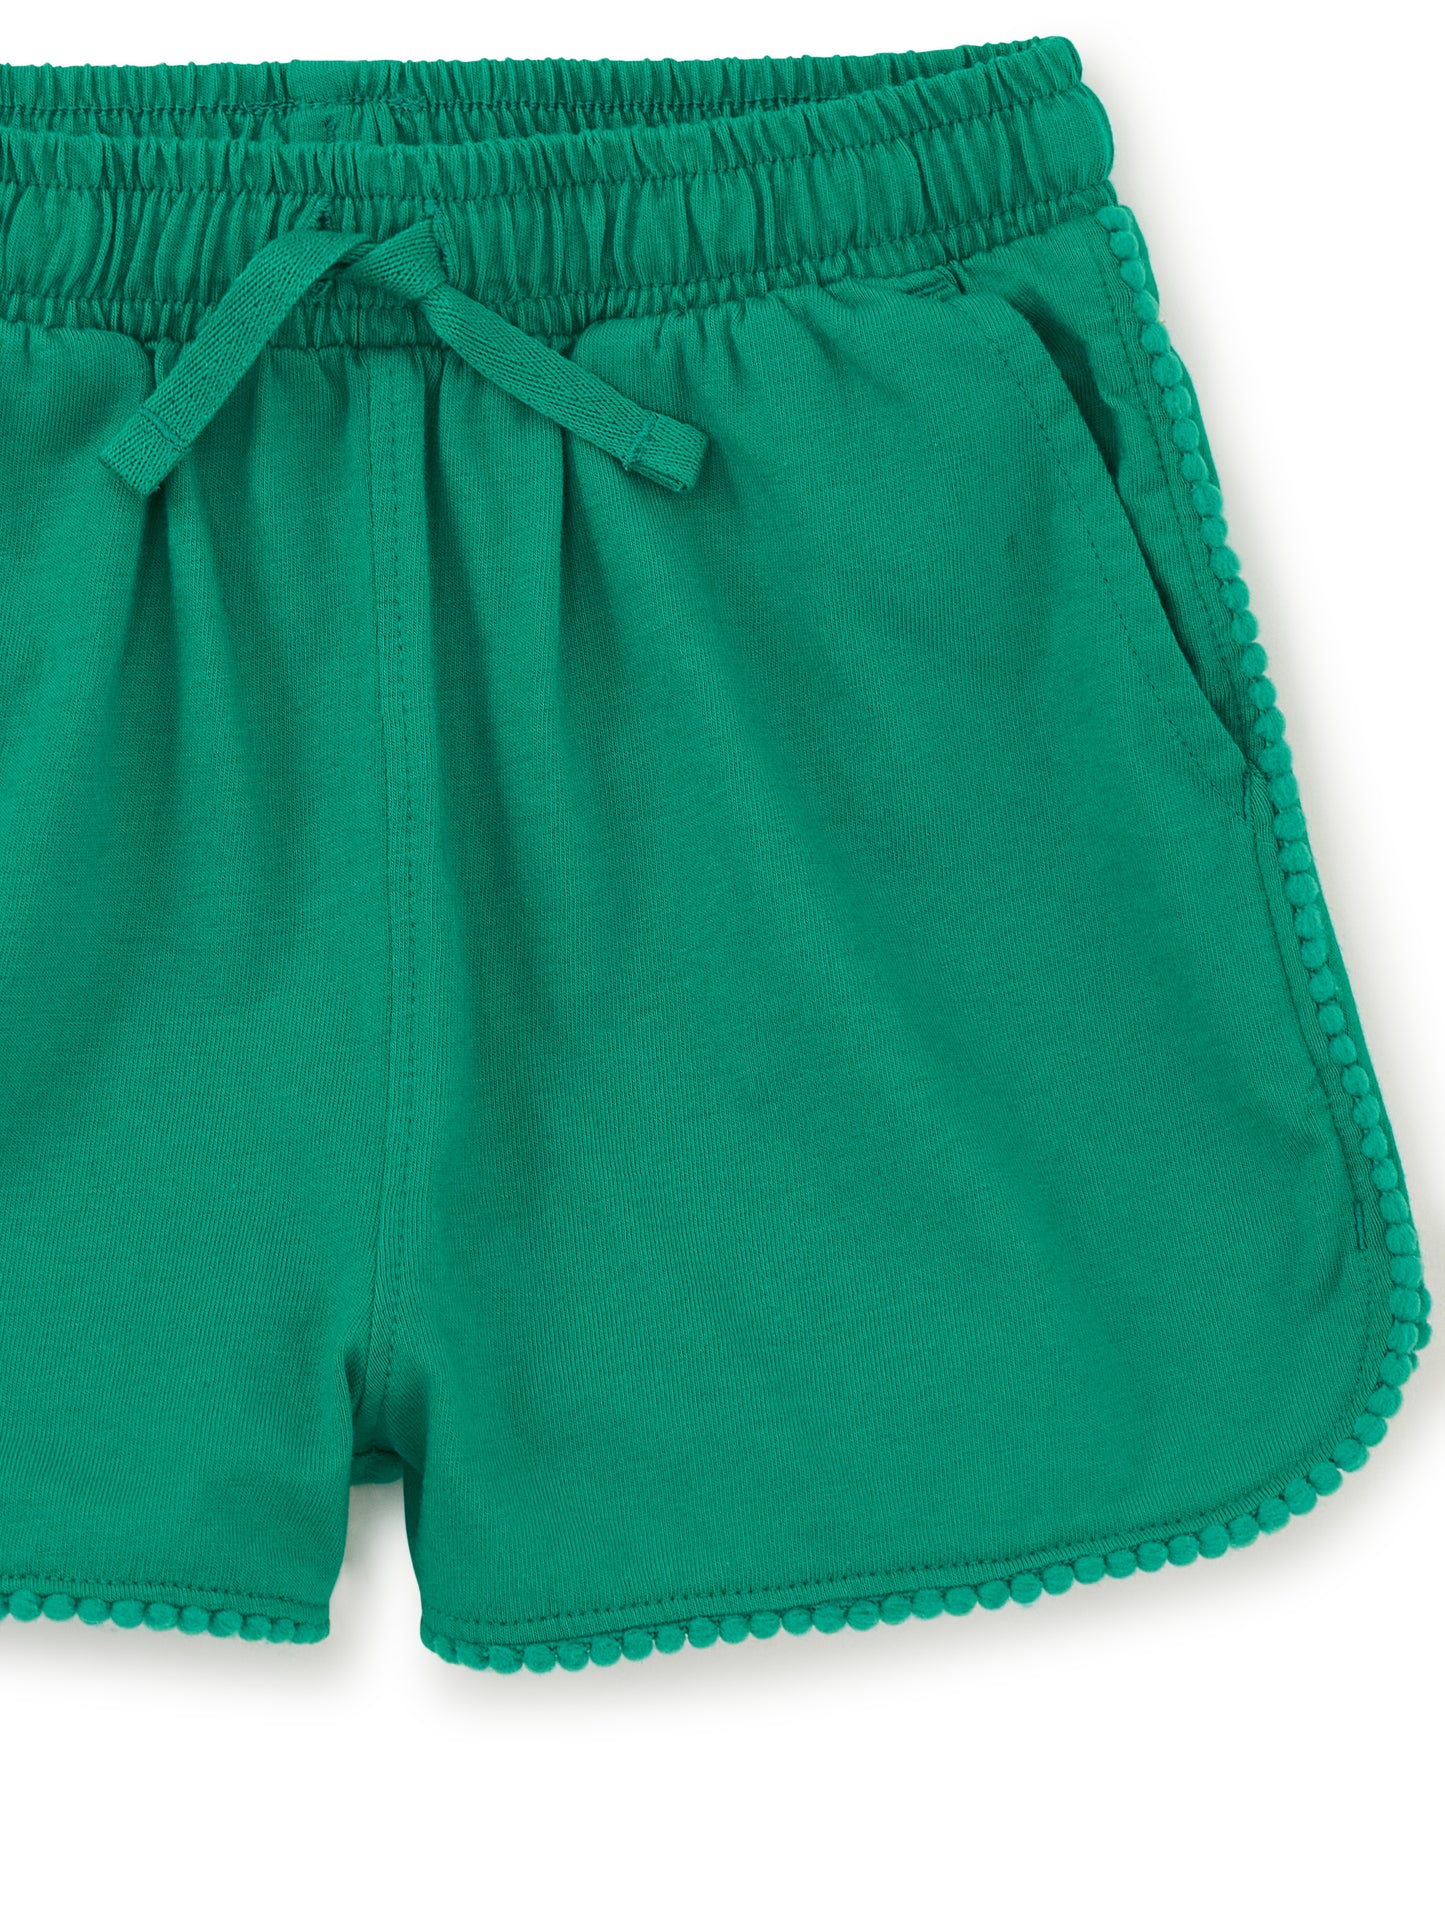 Viridis Green Pom Pom Shorts